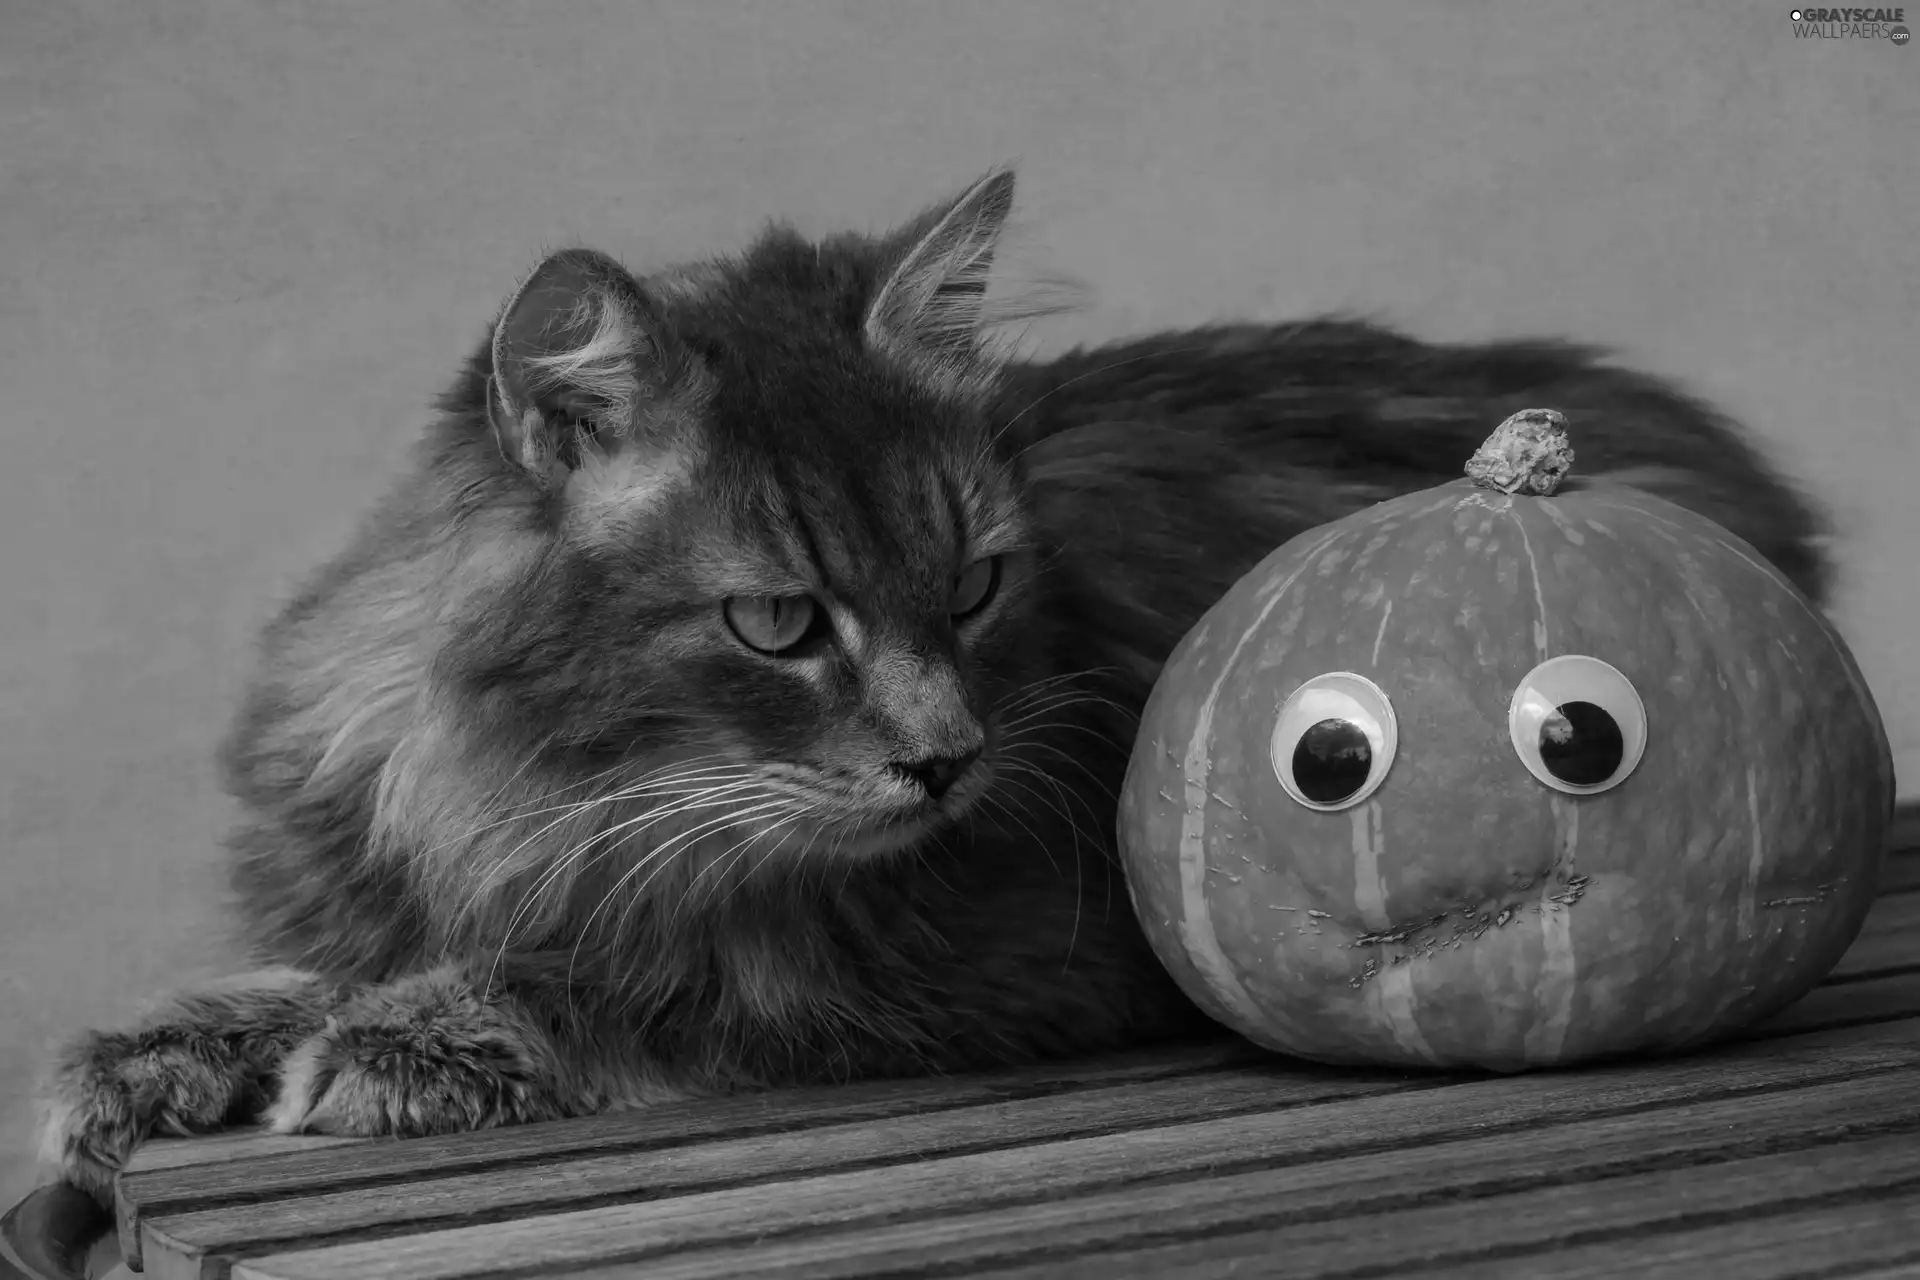 Eyes, boarding, pumpkin, look, cat